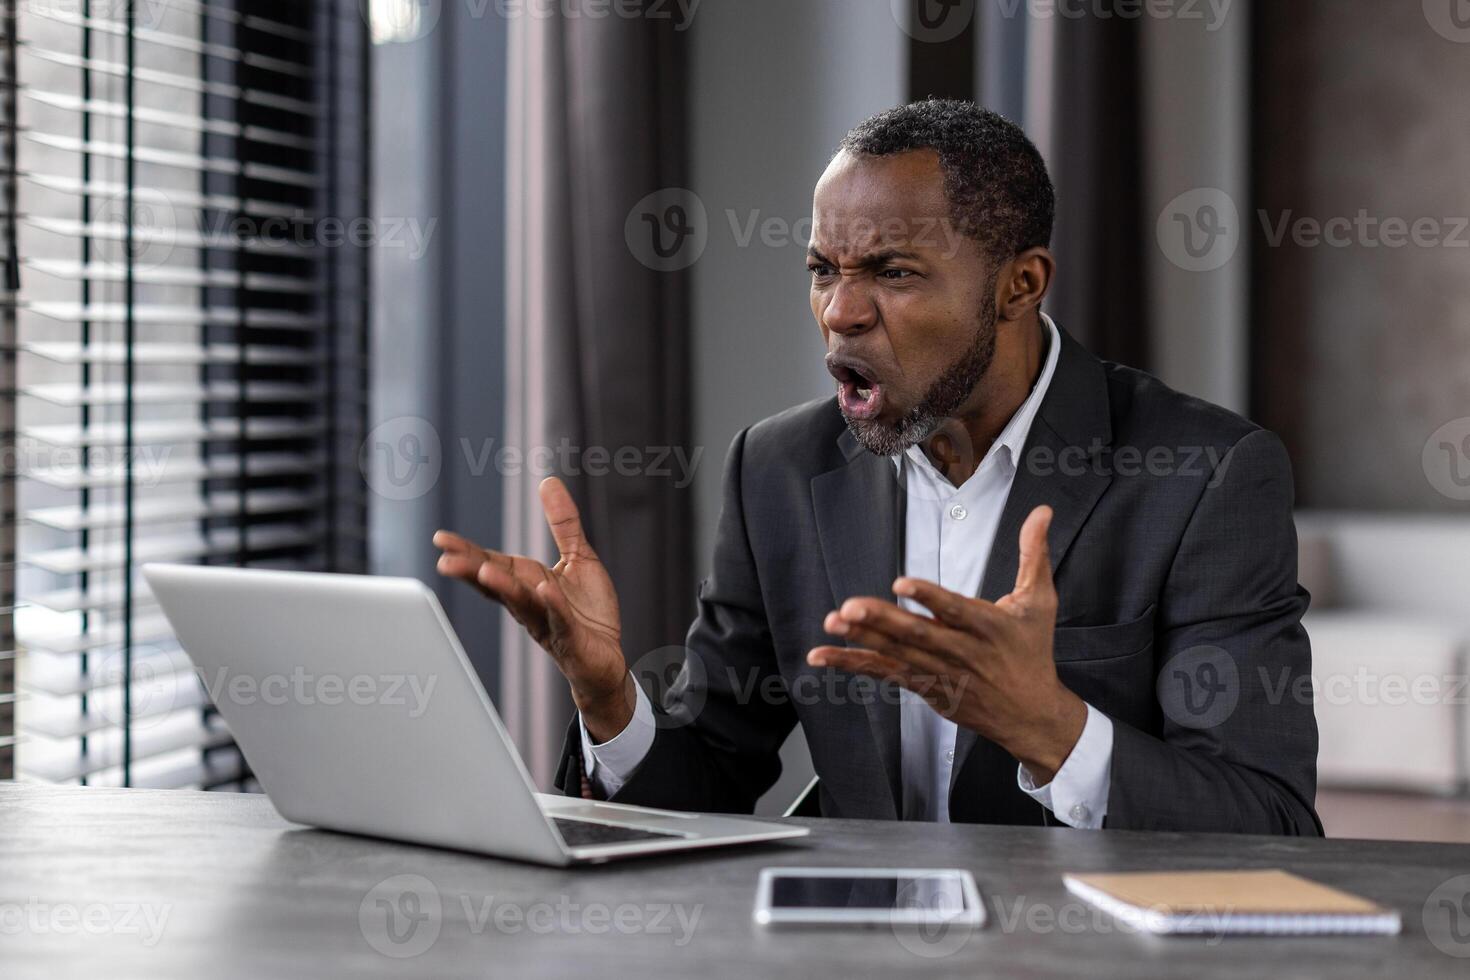 agresivo negro hombre gritando en desesperación mientras trabajando por ordenador portátil en elegante Departamento interior. africano americano masculino trabajador conmocionado por computadora Operacional Descompostura y sistema error en dispositivo. foto